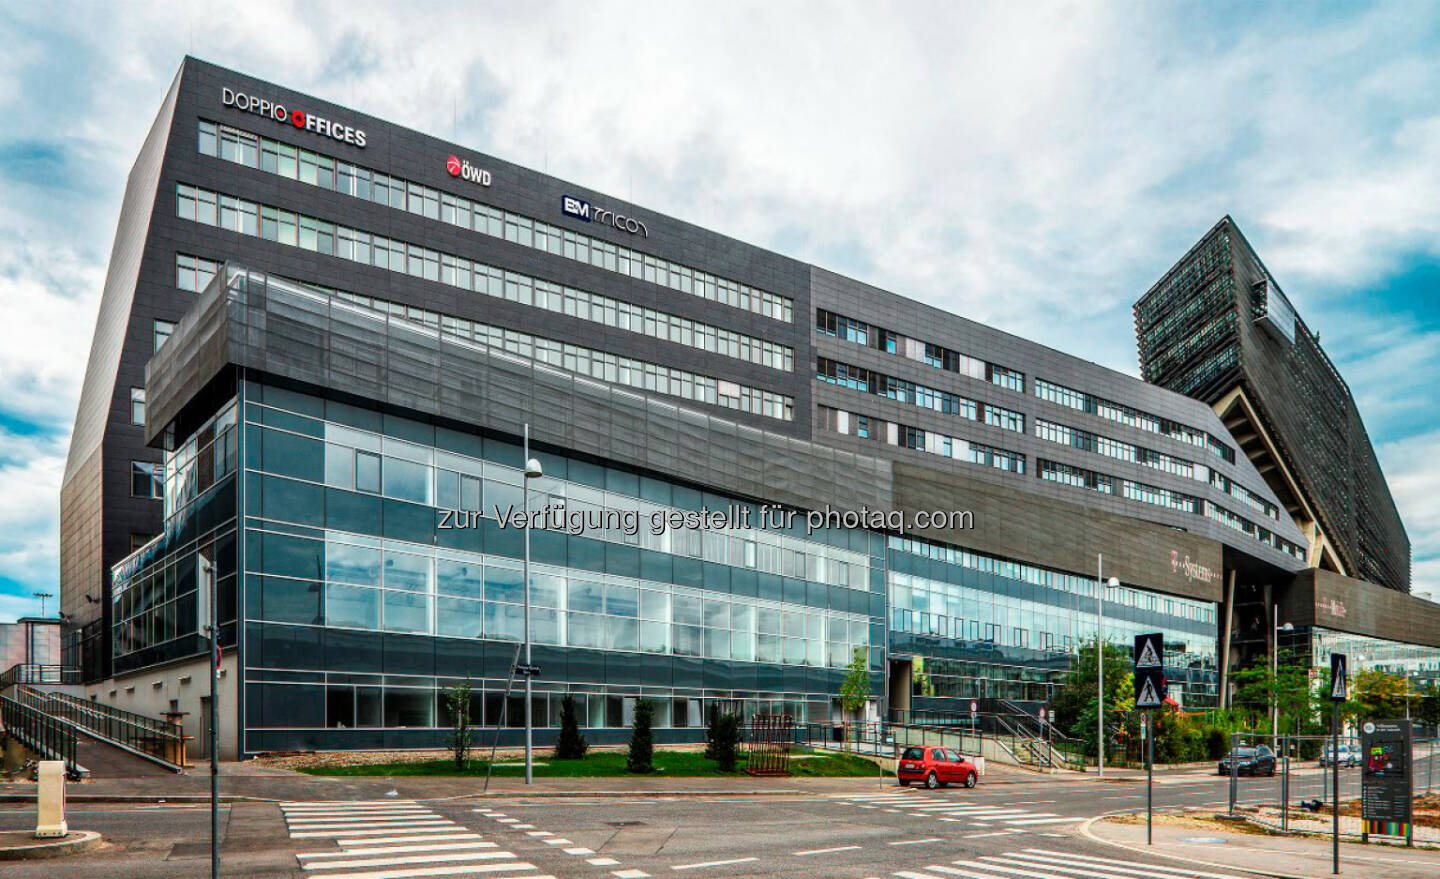 UBM verkauft Wiener Bestandsimmobilie Doppio Offices für rund EUR 20 Mio. an Union Investment (Bild: Anna Blau/UBM)